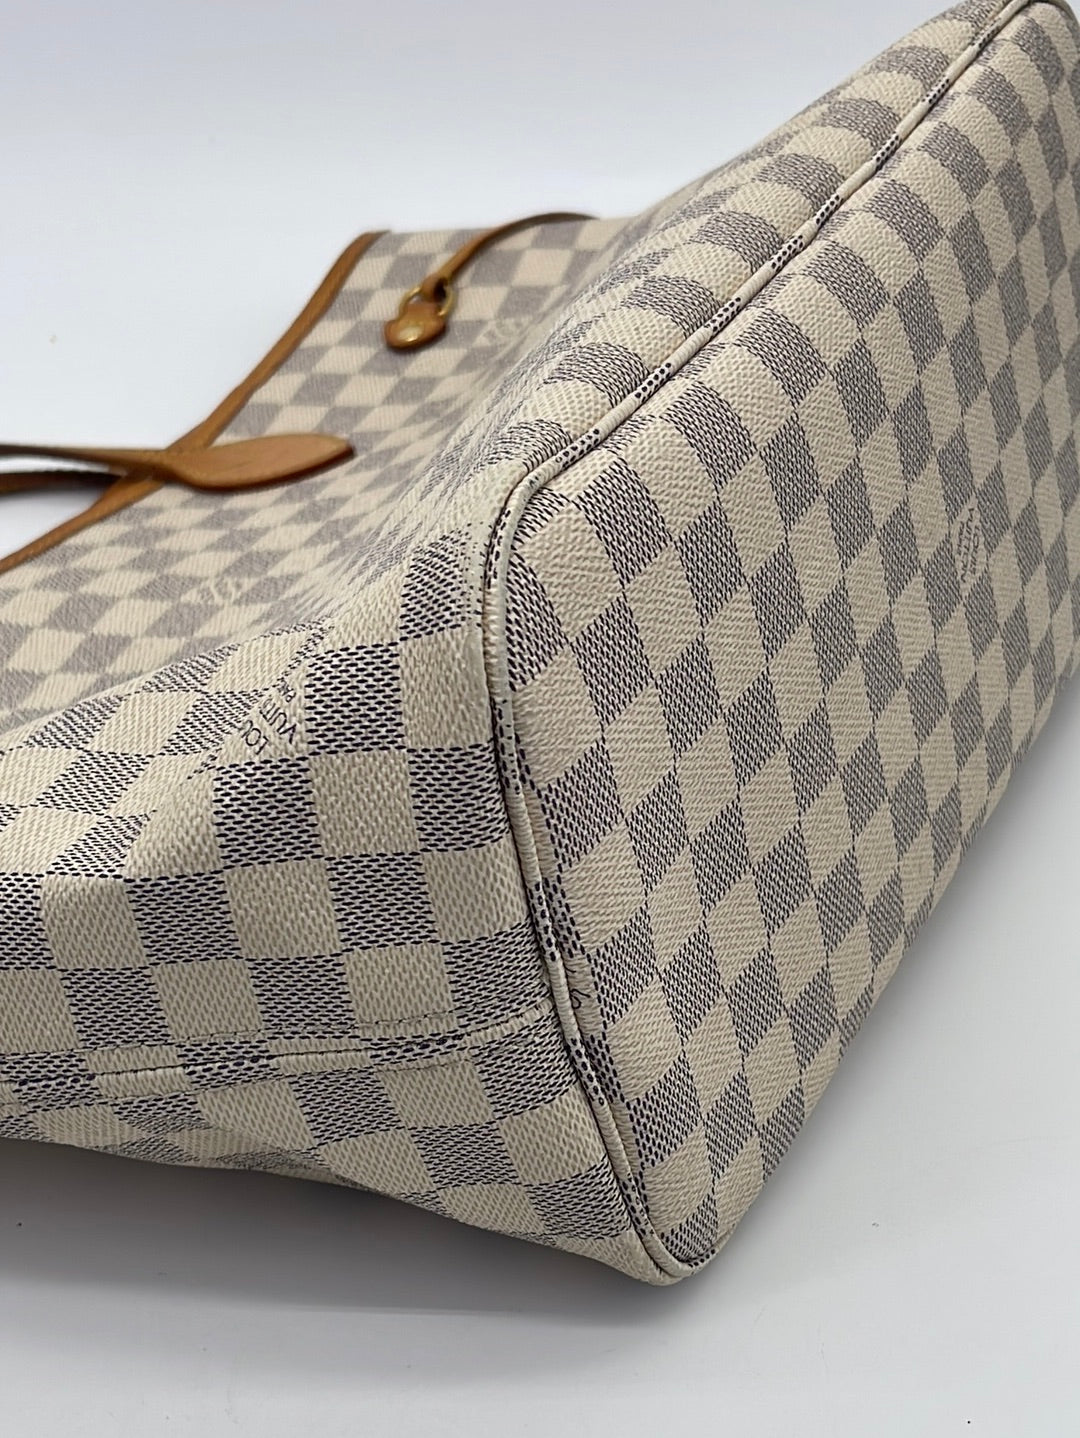 White Louis Vuitton Damier Azur Neverfull MM Tote Bag – Designer Revival